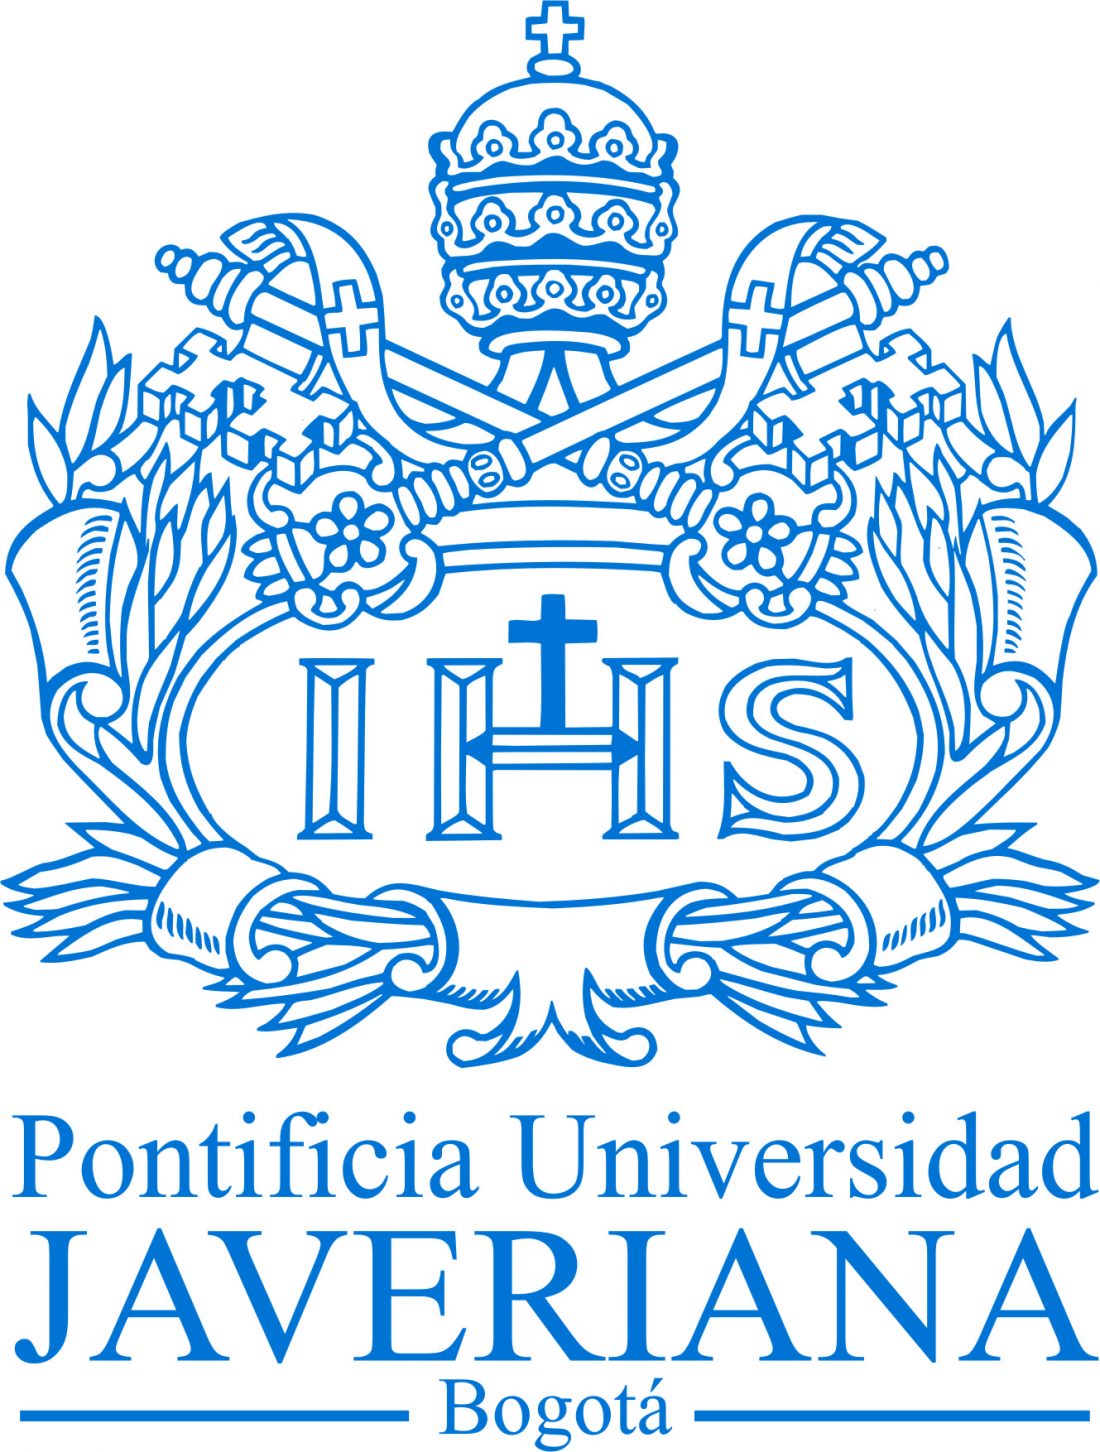 Logo de la Pontificia Univerisidad Javeriana en Bogotá socia fundadora de CAPAZ.